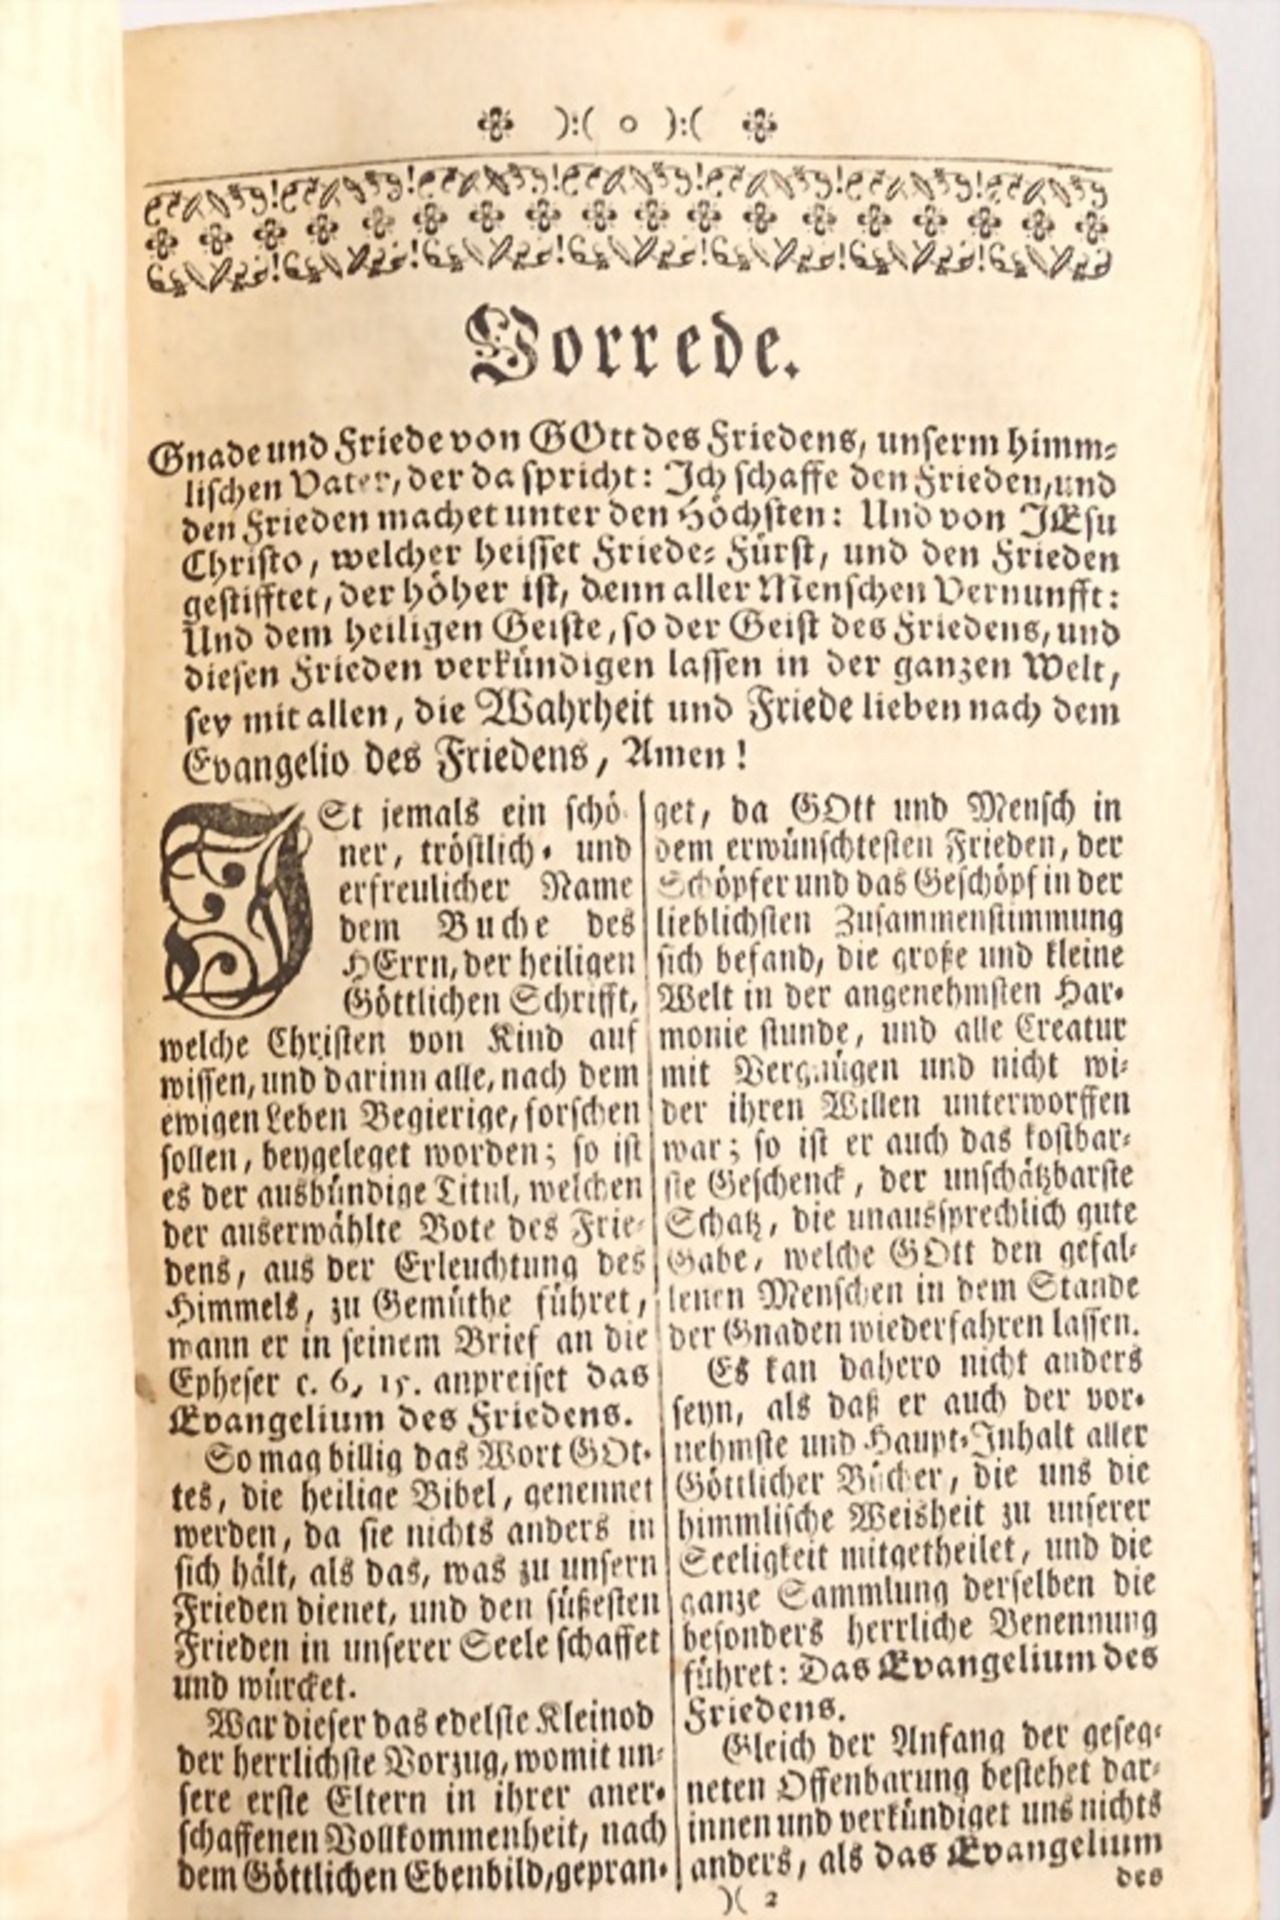 'Die ganze heilige Schrift - des Alten und Neuen Testamentes', Schwabbach, 1748 - Image 5 of 7